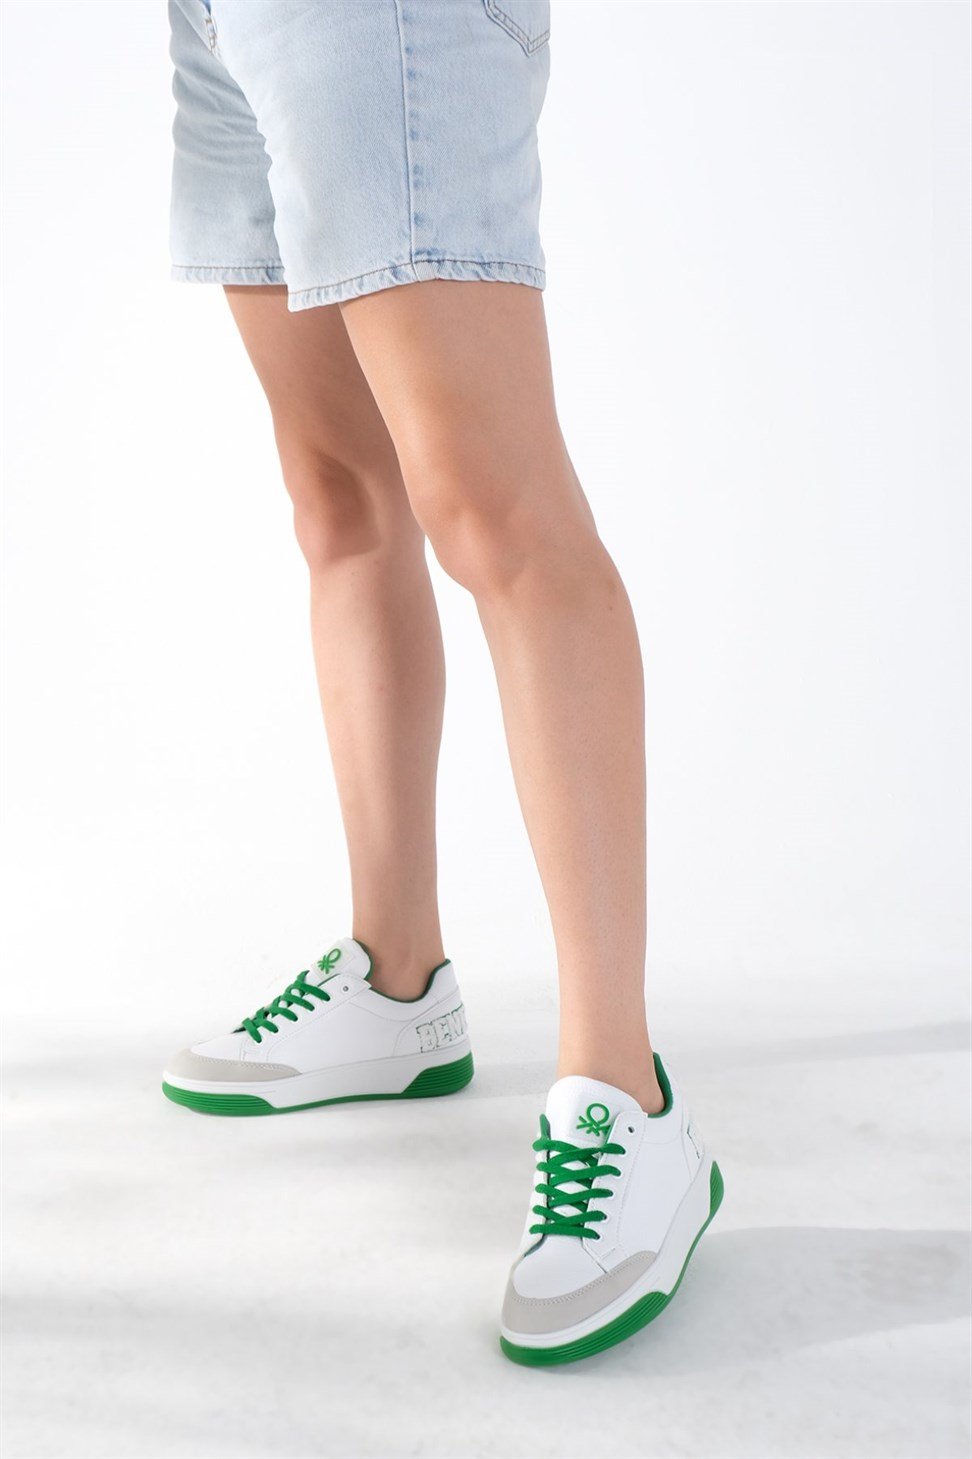 Kadın Arkası Yazılı Bağcıklı Spor Ayakkabı YEŞİL/BEYAZ